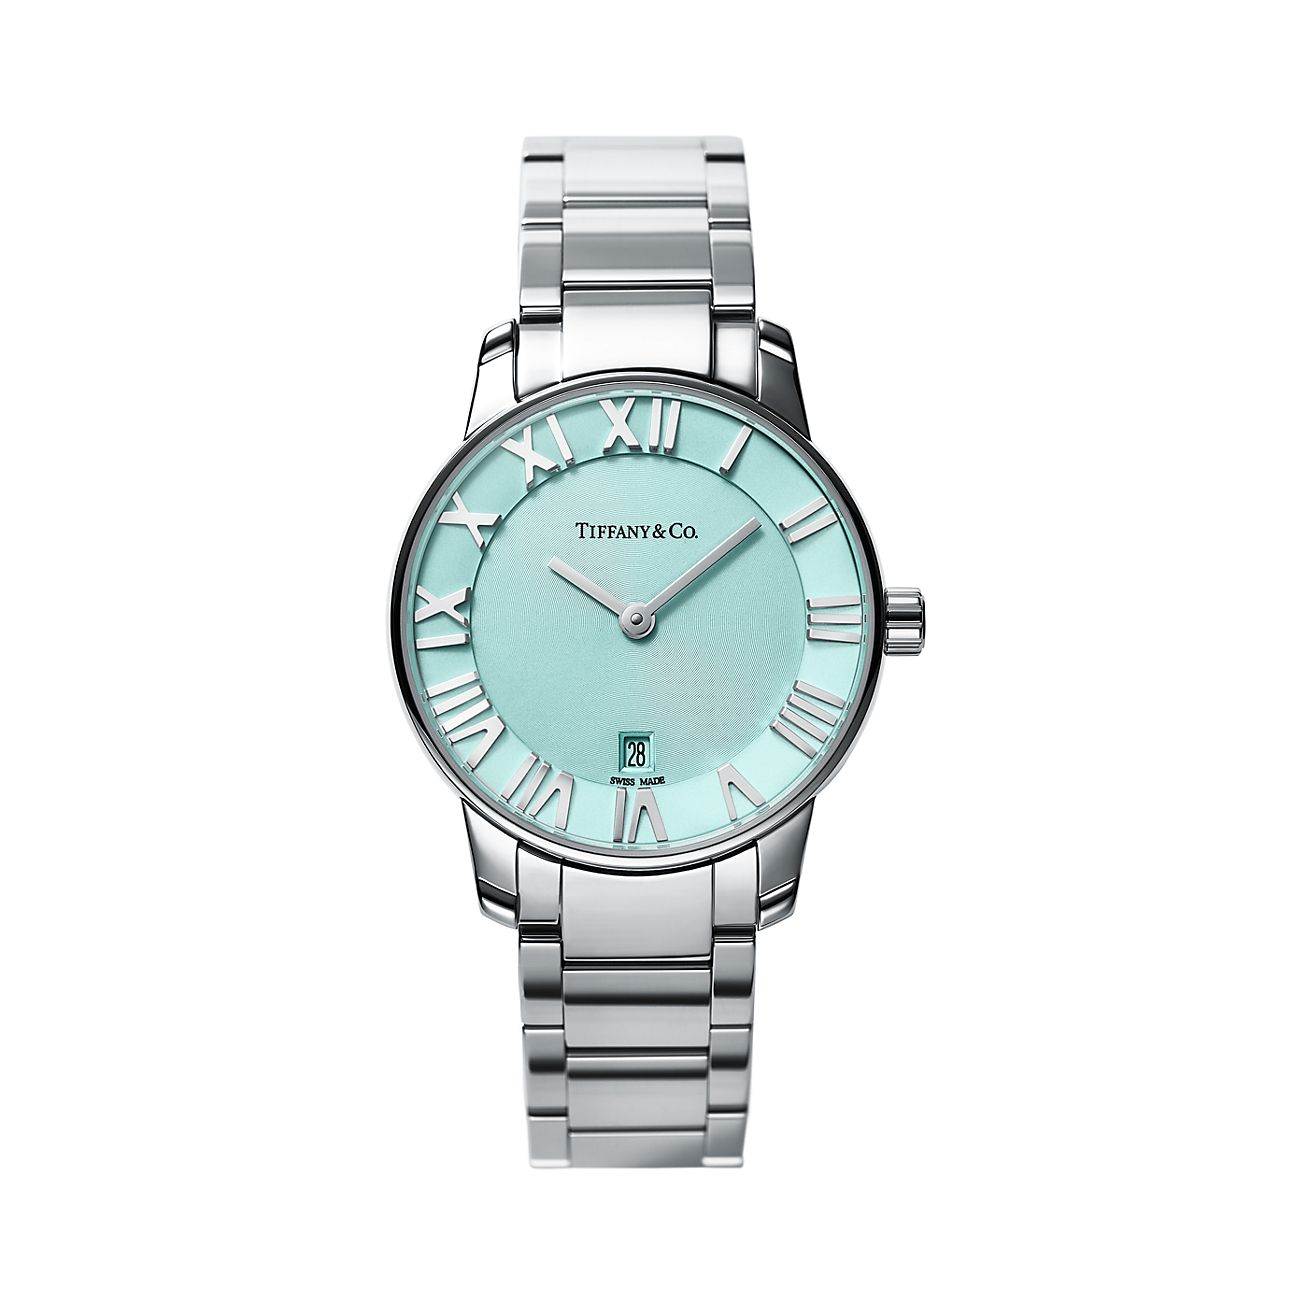 Atlas® 2-Hand 29 mm women's watch in 